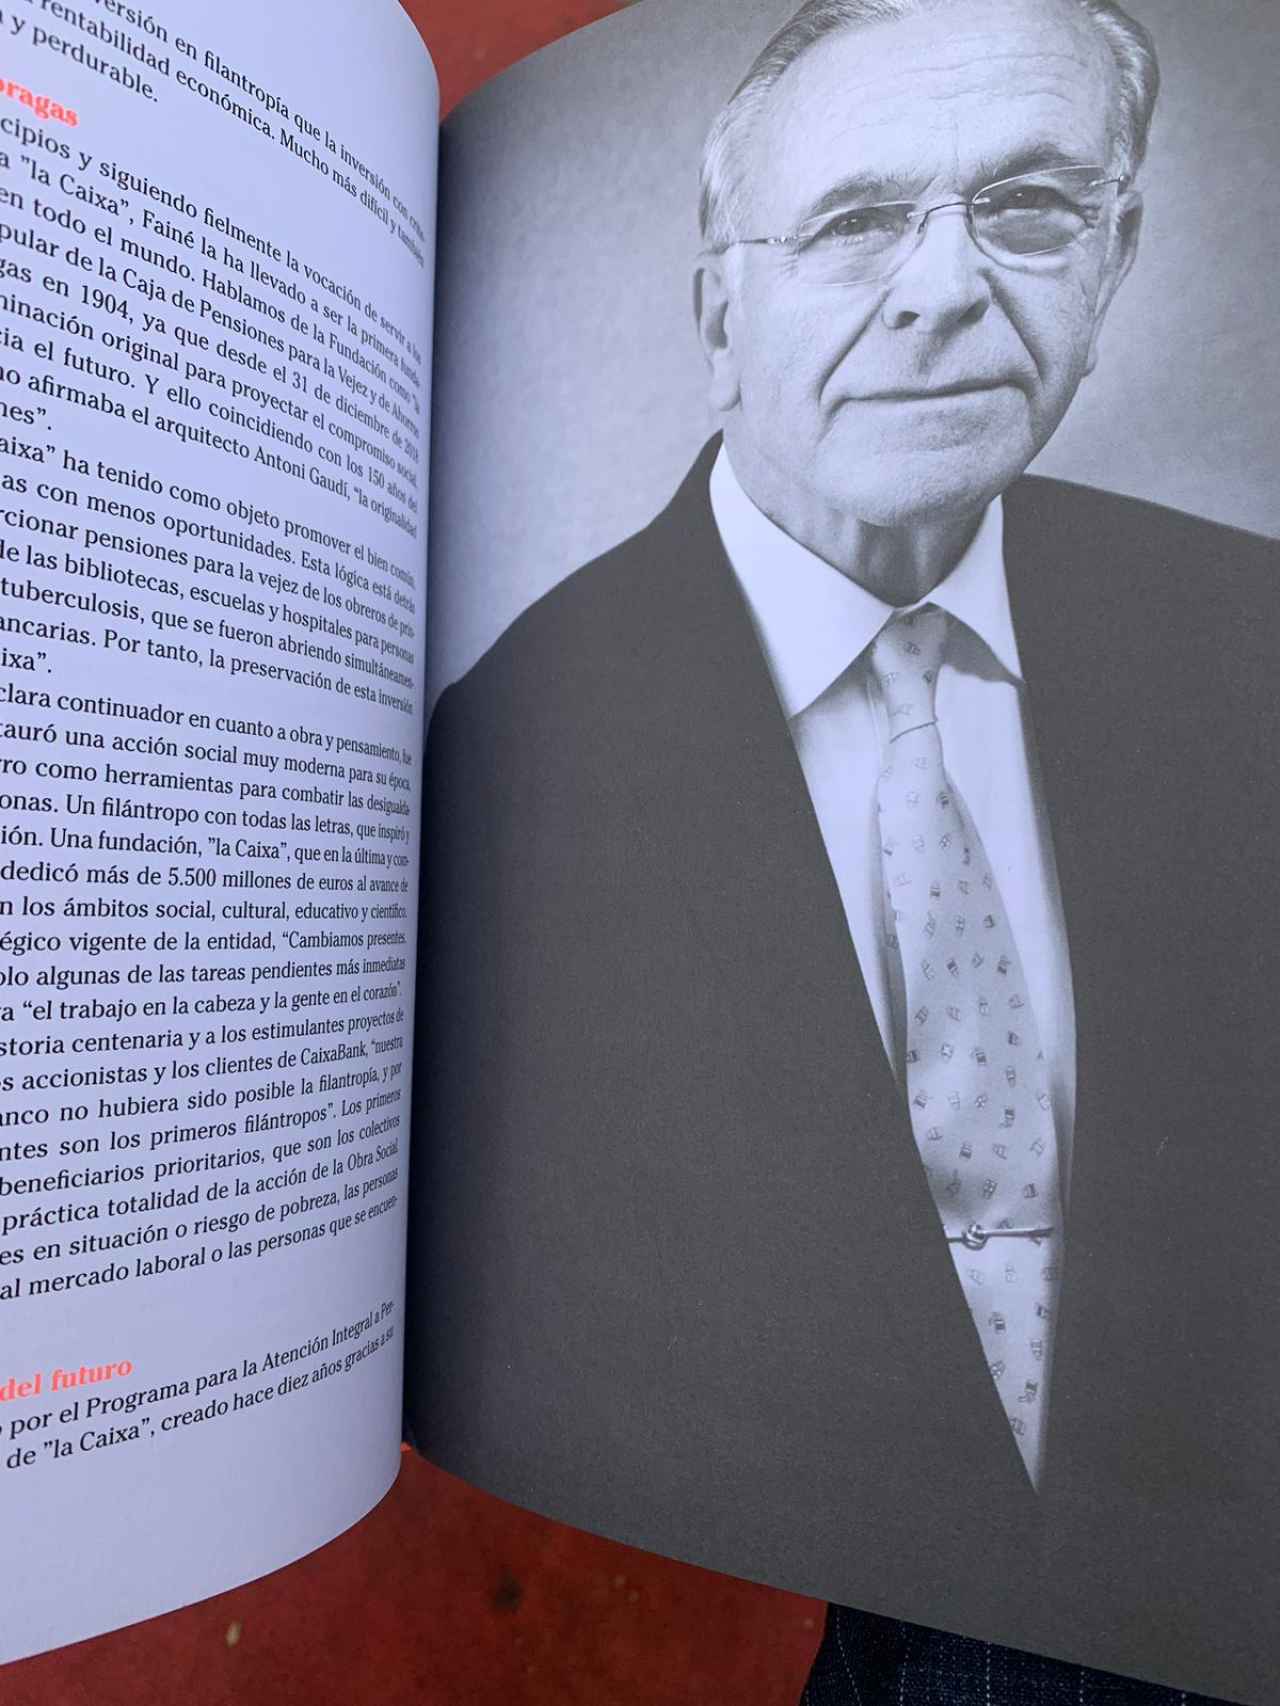 Isidro Fainé, el único espanol entre los 15 grandes filántropos del libro